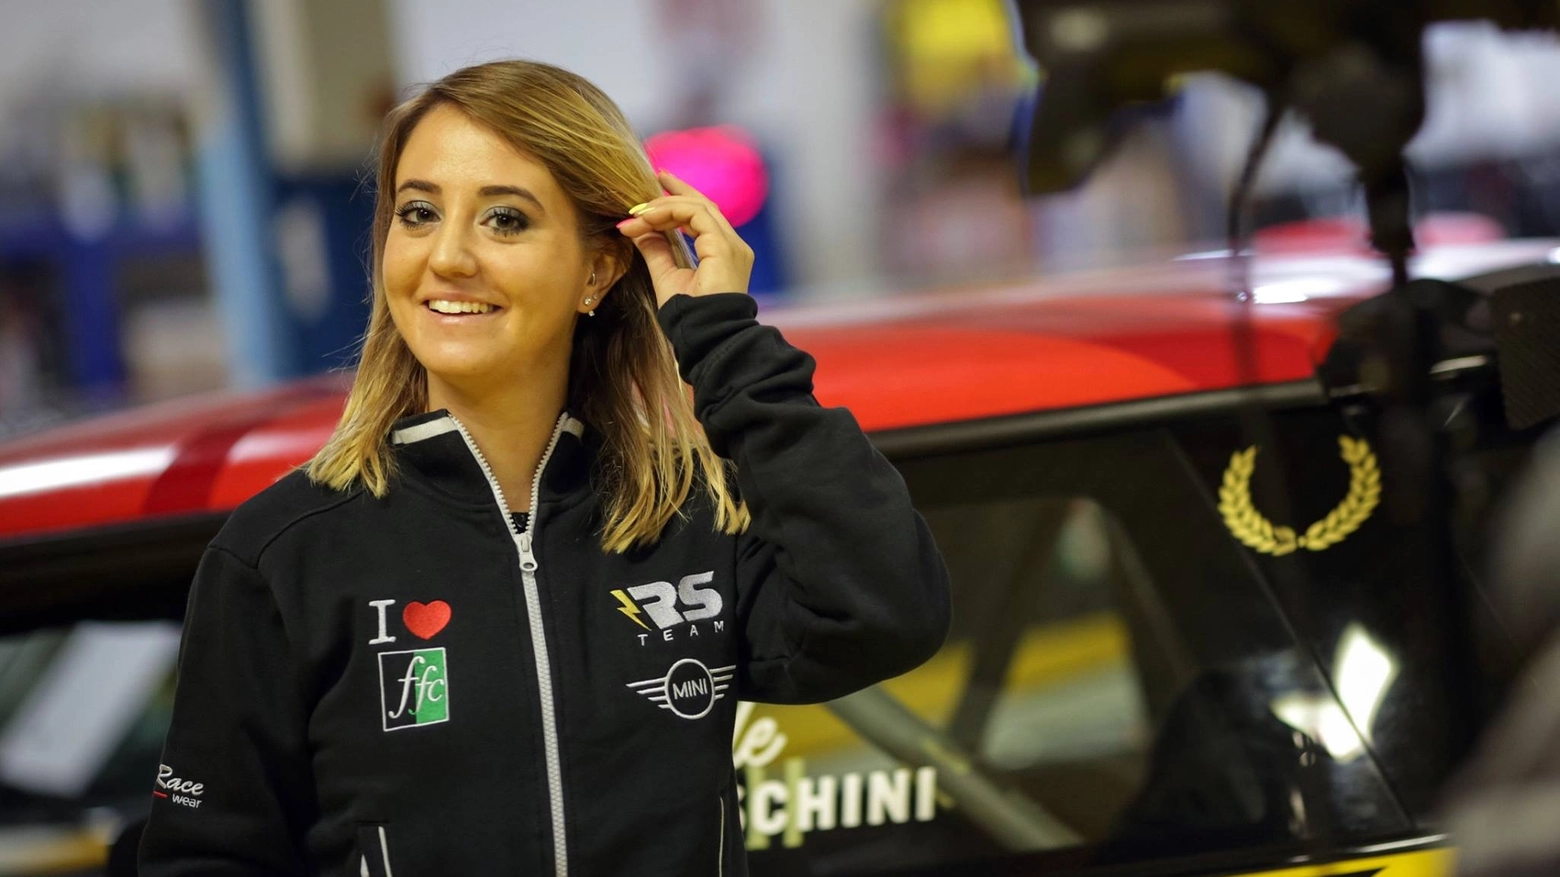 La 25enne pilota milanese, affetta da fibrosi cistica, ha da poco partecipato al Rally di Montecarlo e alla mitica Targa Florio